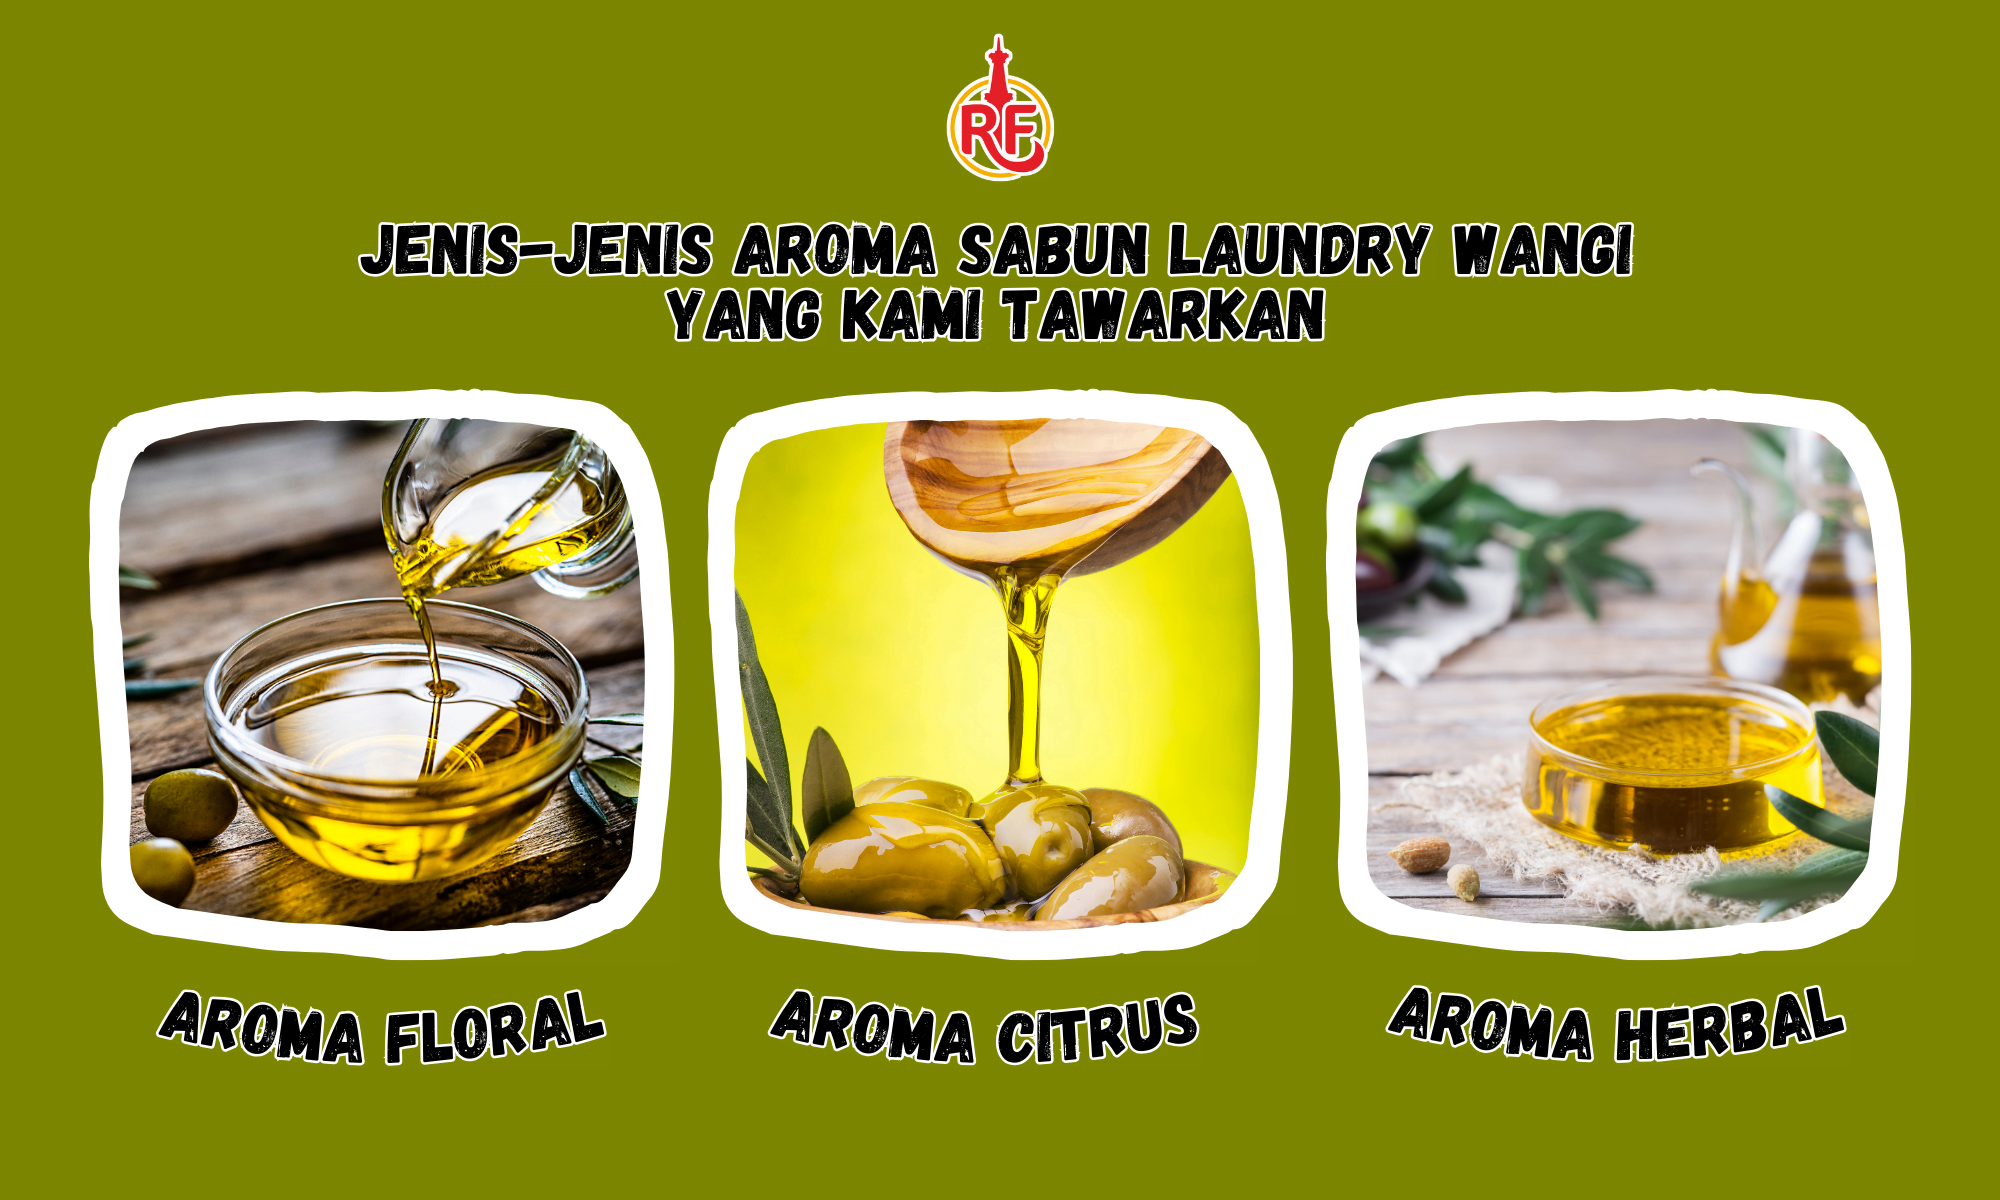 Jenis-jenis Aroma Sabun Laundry